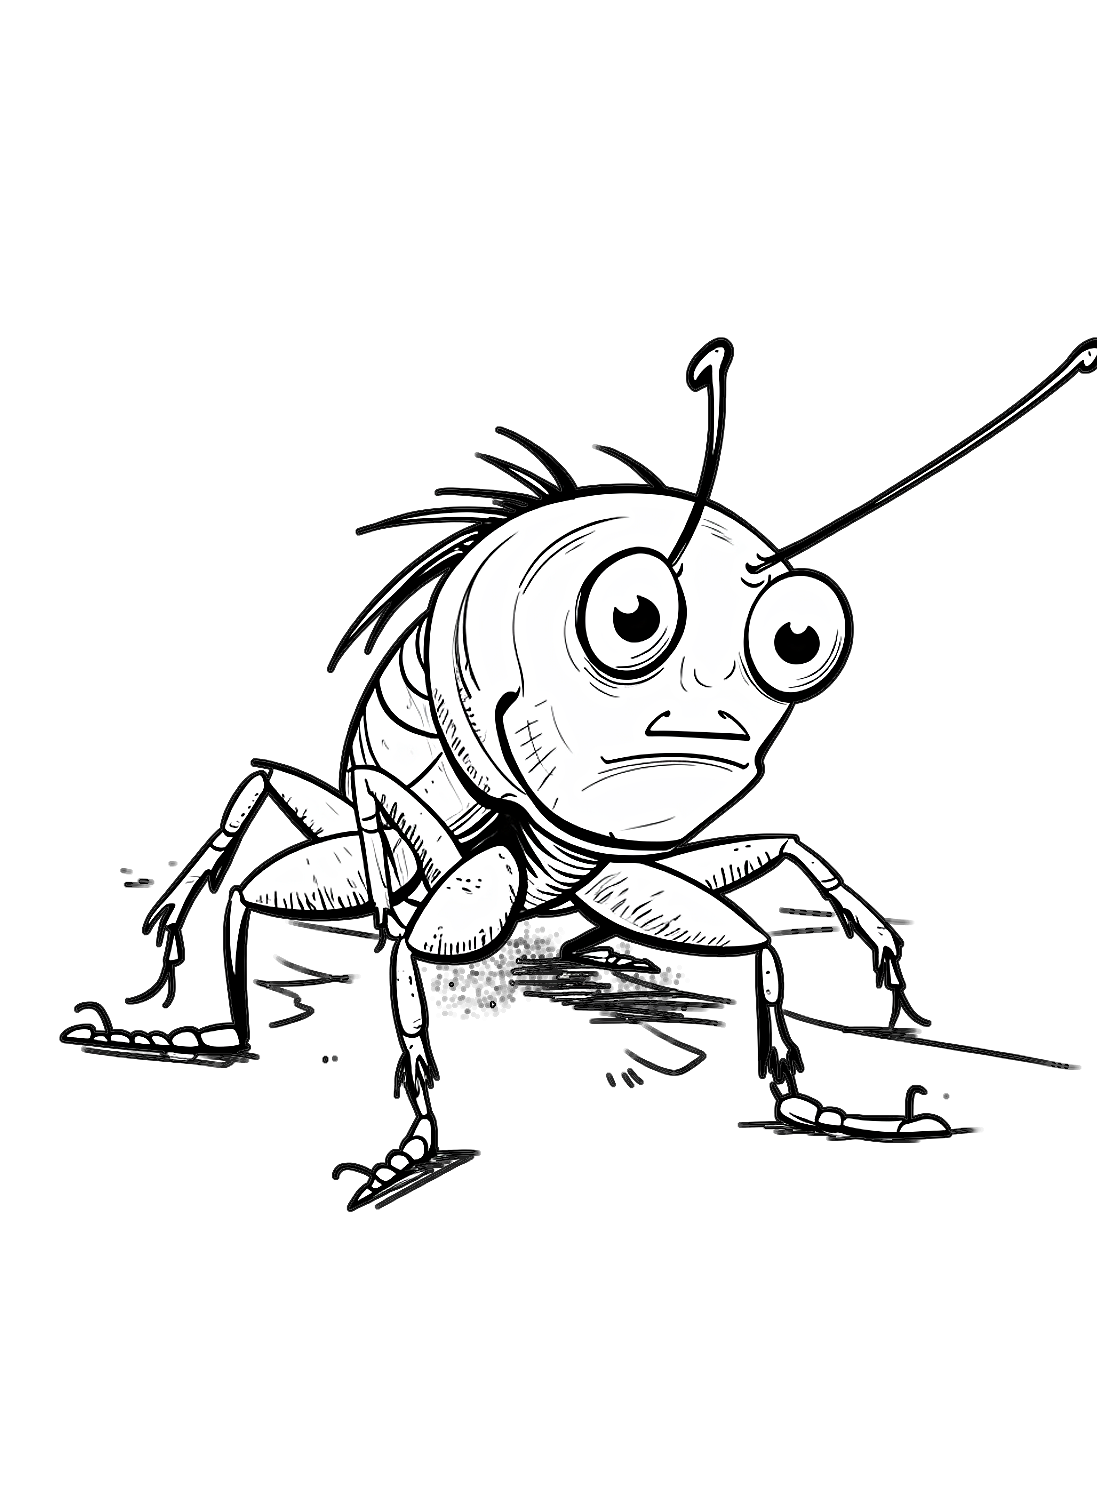 Kakkerlak is verdrietig van Kakkerlak